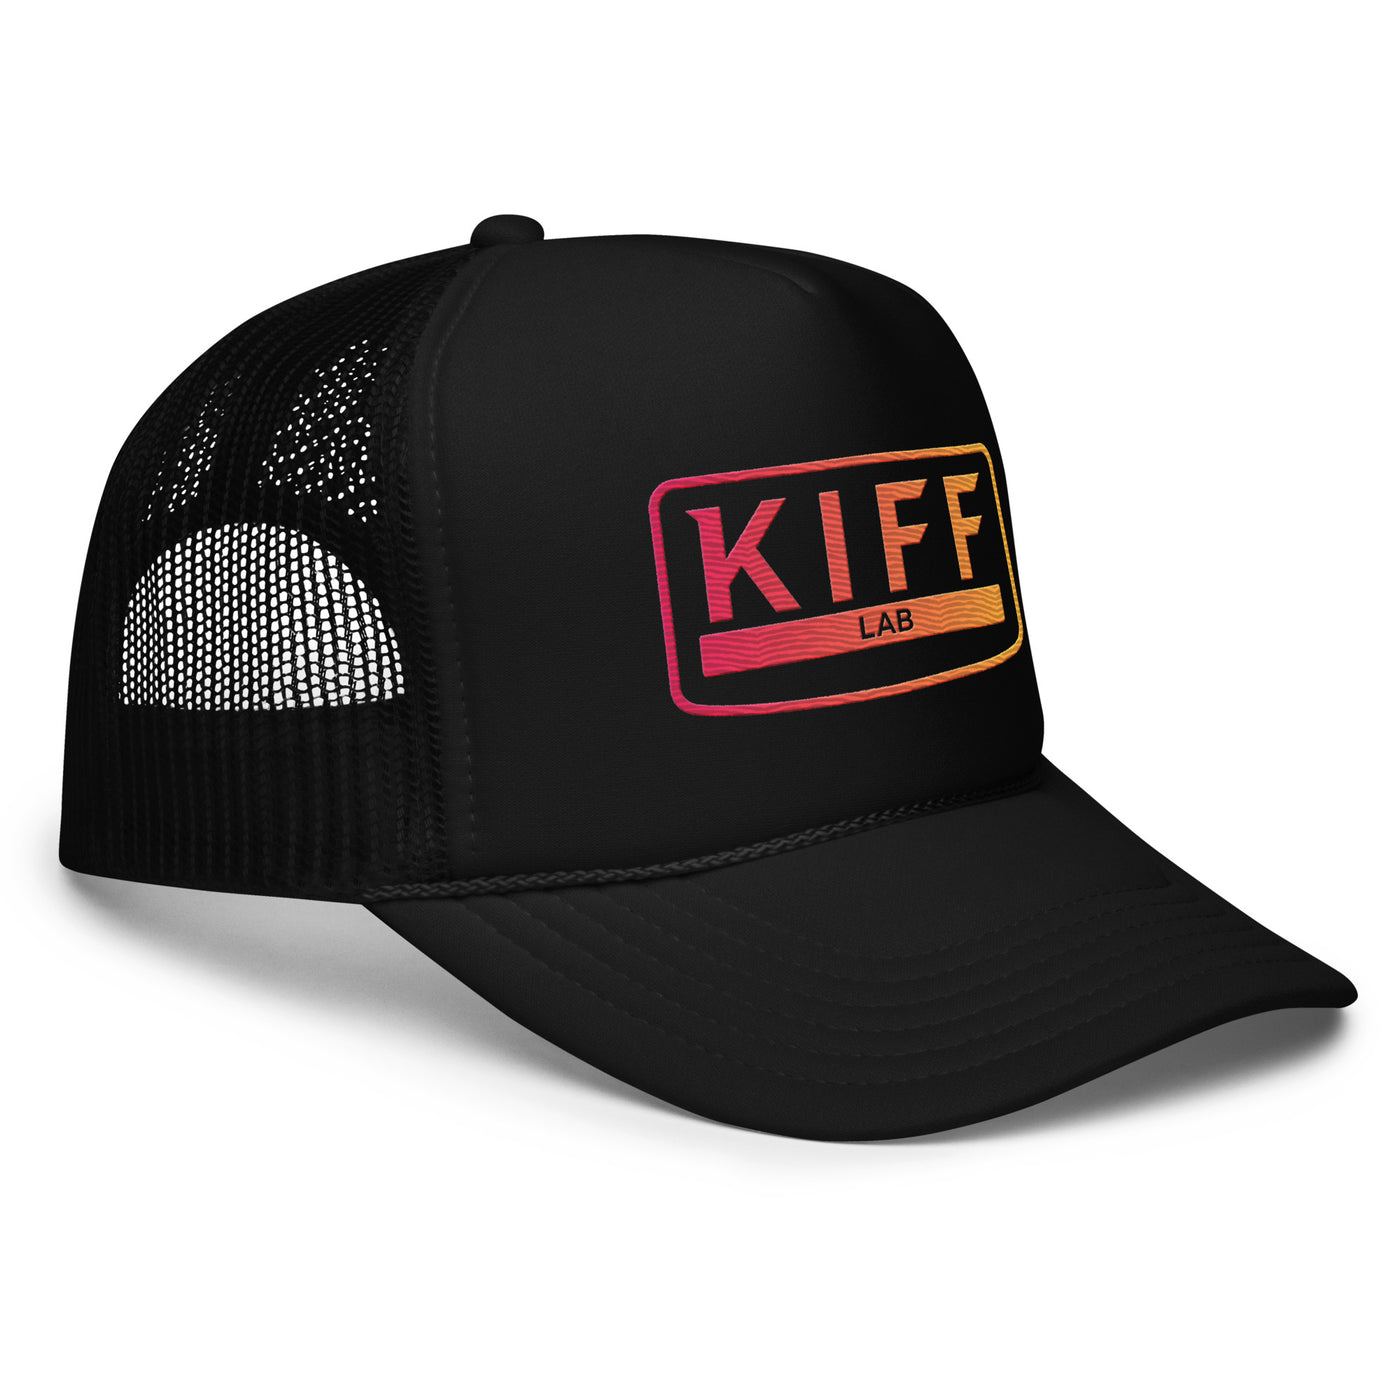 KiffLab Foam trucker hat